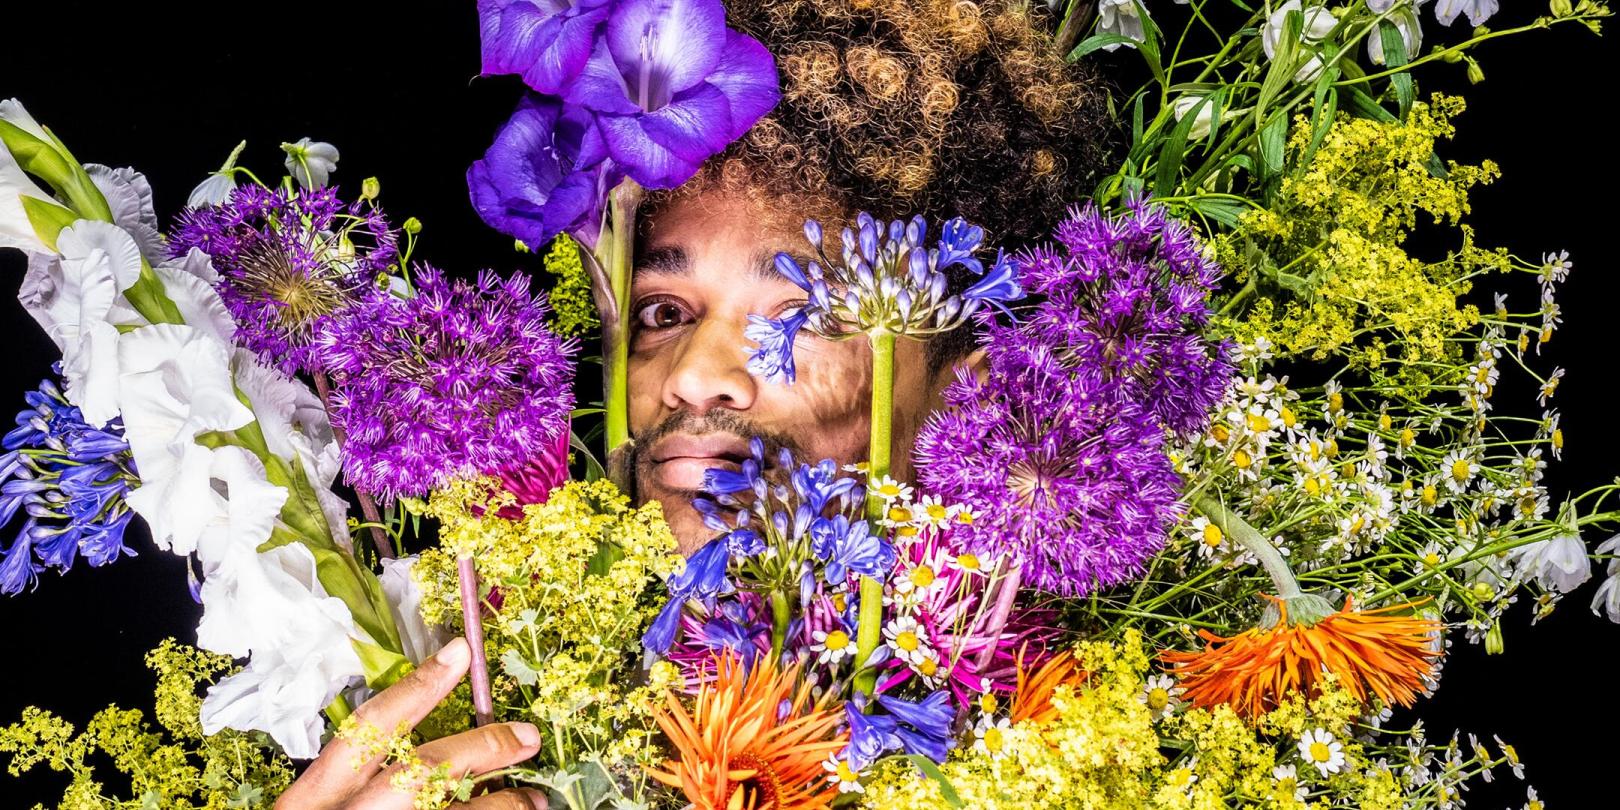 Ein Mann schaut hinter einem Strauß bunter Blumen hervor.